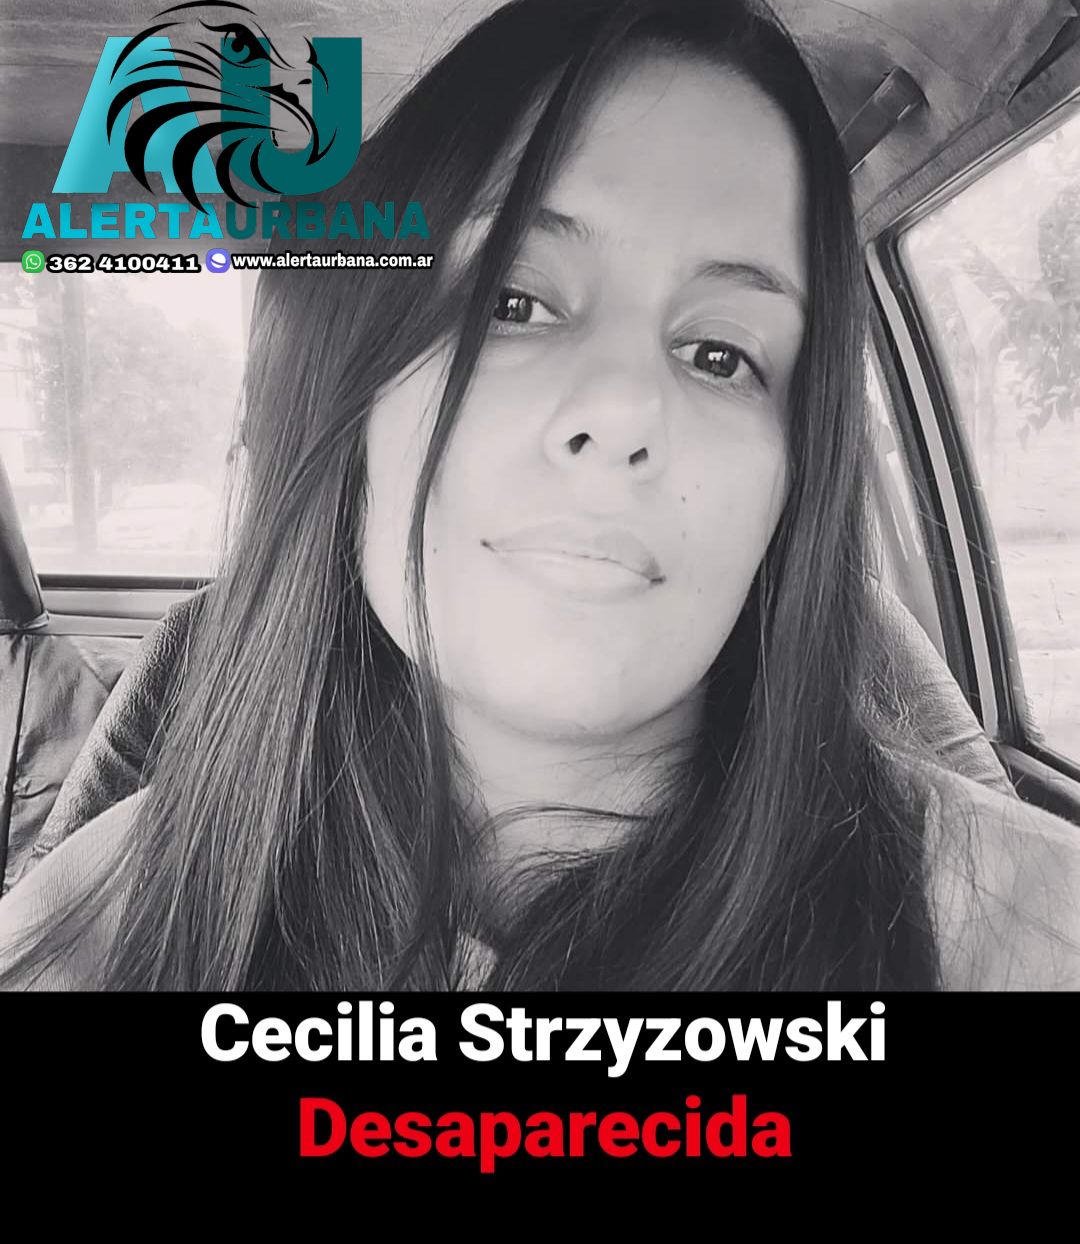 Se busca desesperadamente a Cecilia Strzyzowsk desaparecida desde el 1 de junio